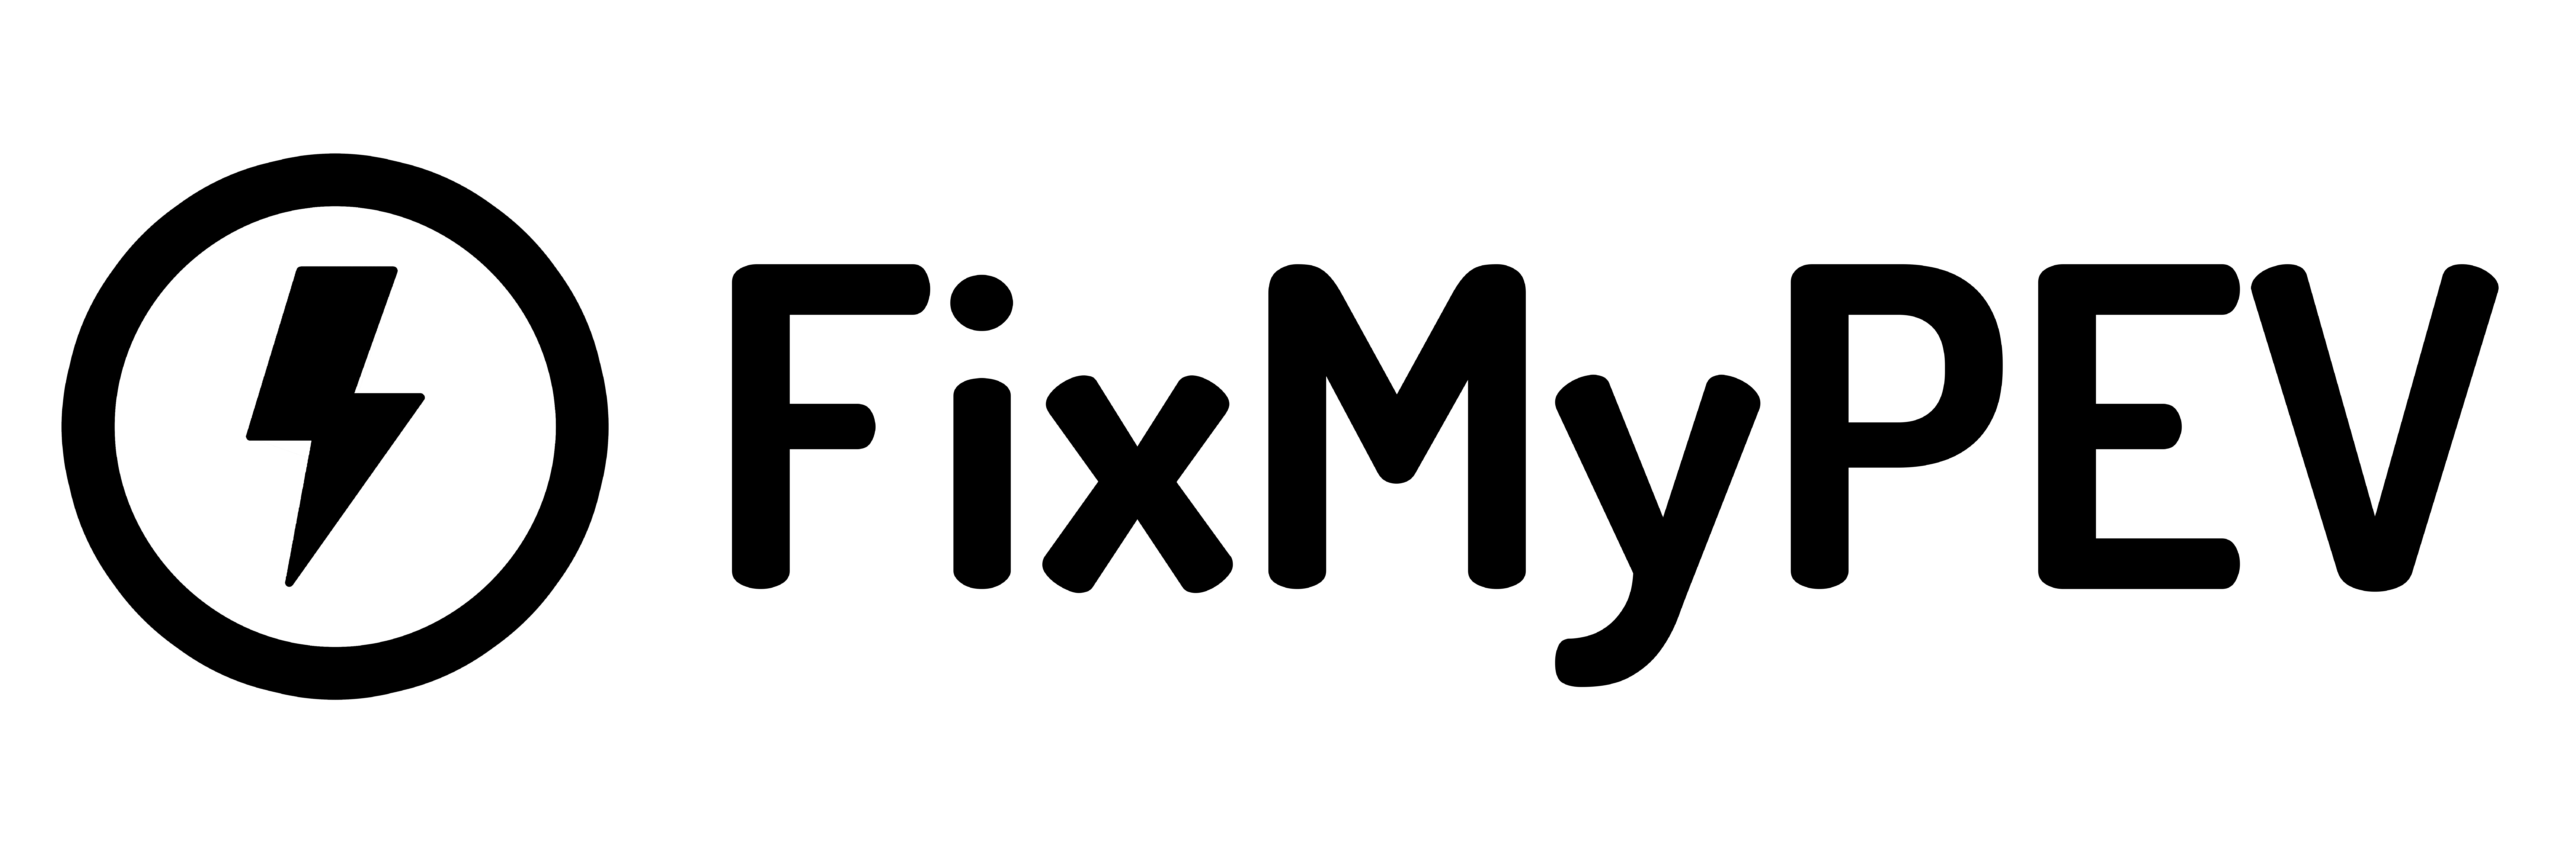 FixMyPEV logo in black